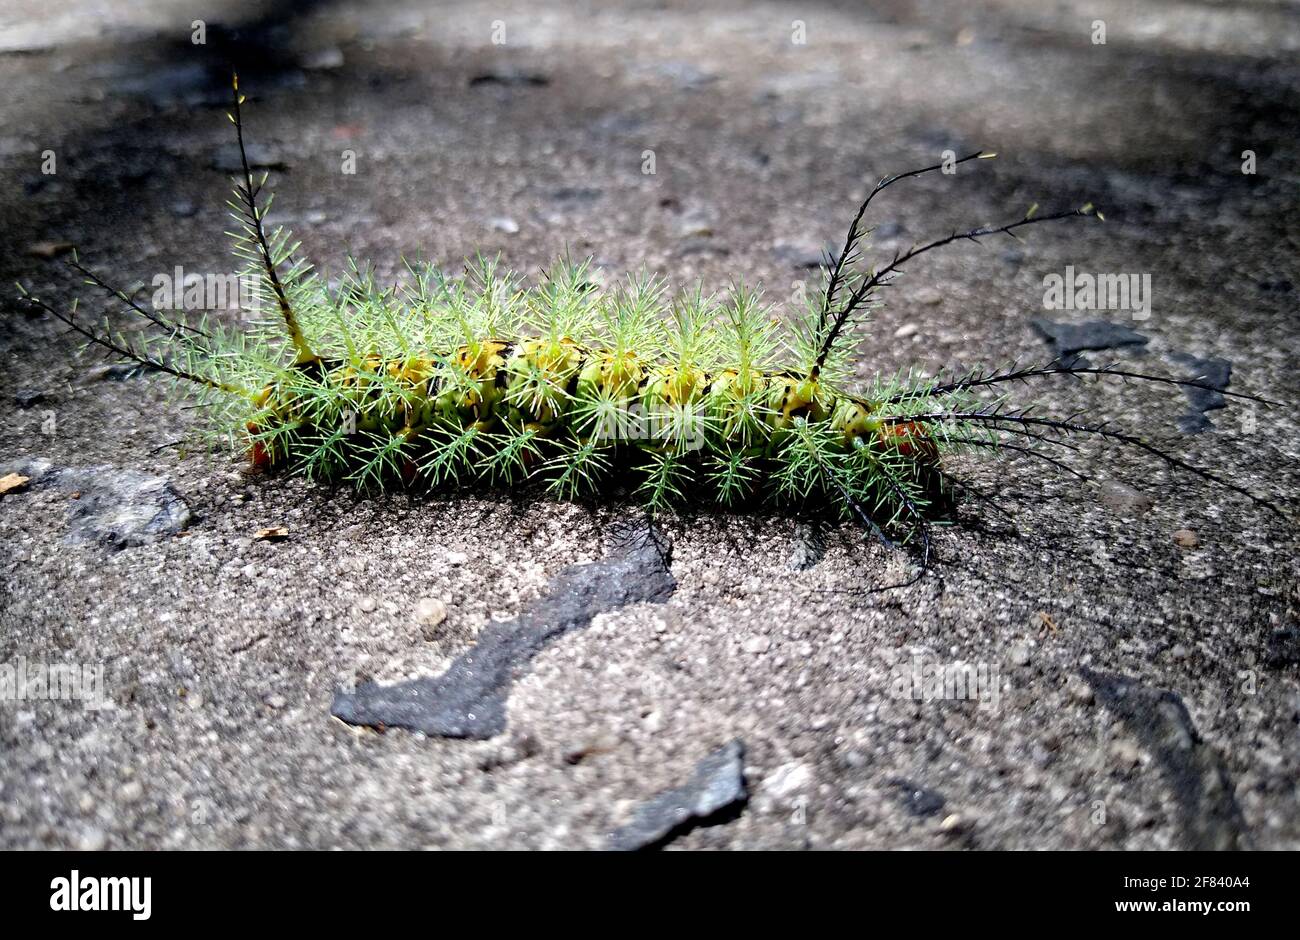 salvador, bahia / brazil - november 24, 2020: insect fire caterpillar is seen in a garden in the city of Salvador. Stock Photo